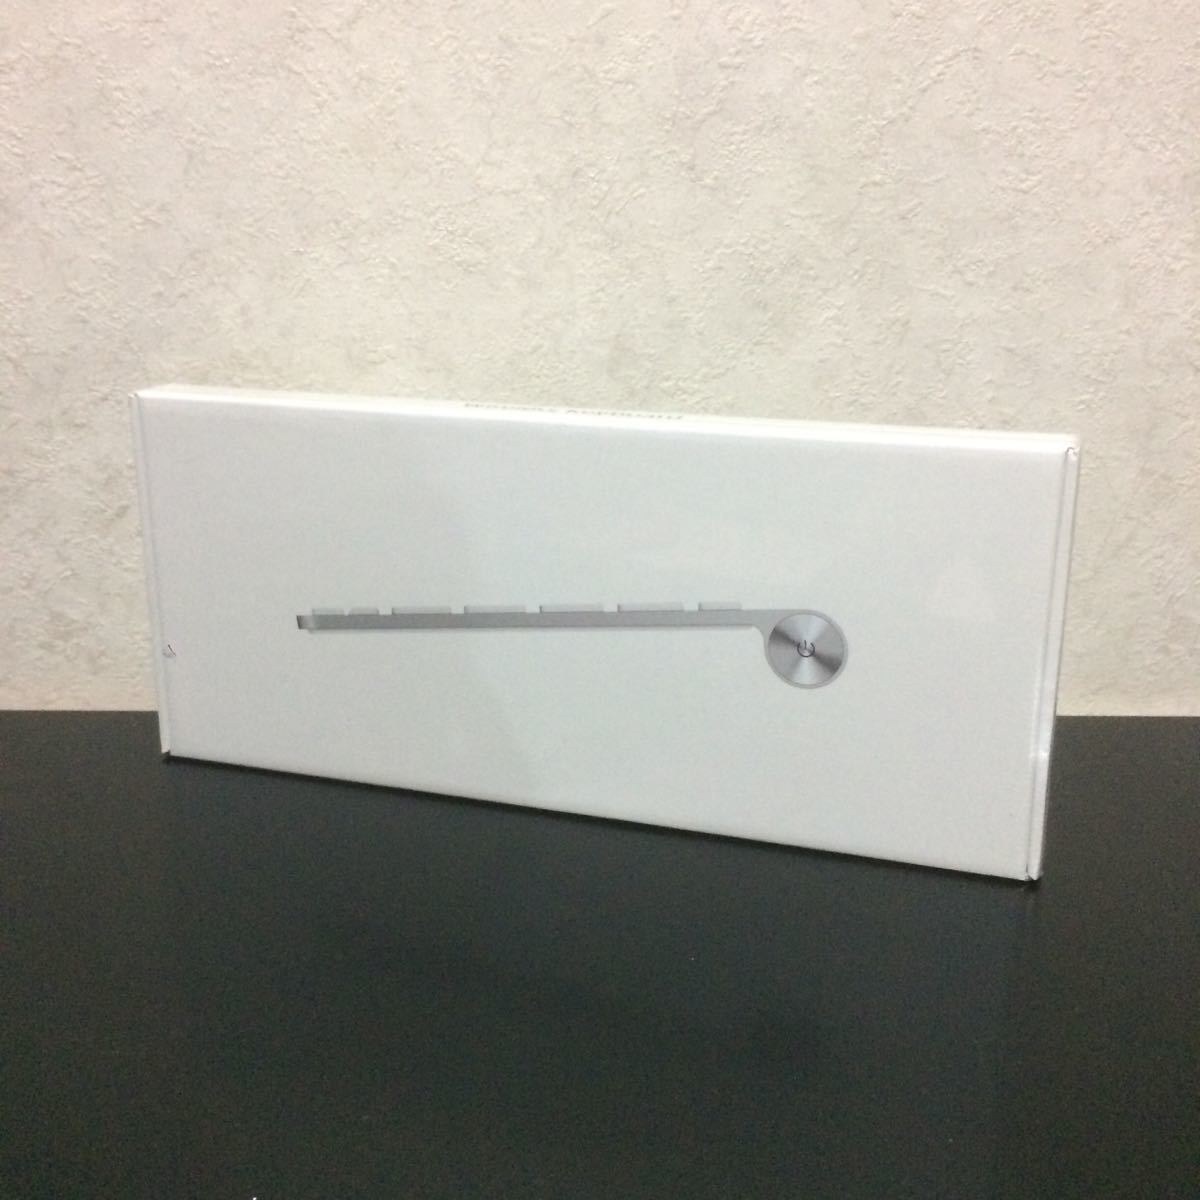 【未開封】Apple ワイヤレスキーボード Wireless Keyboard (JIS) MC184J/B【未開封】